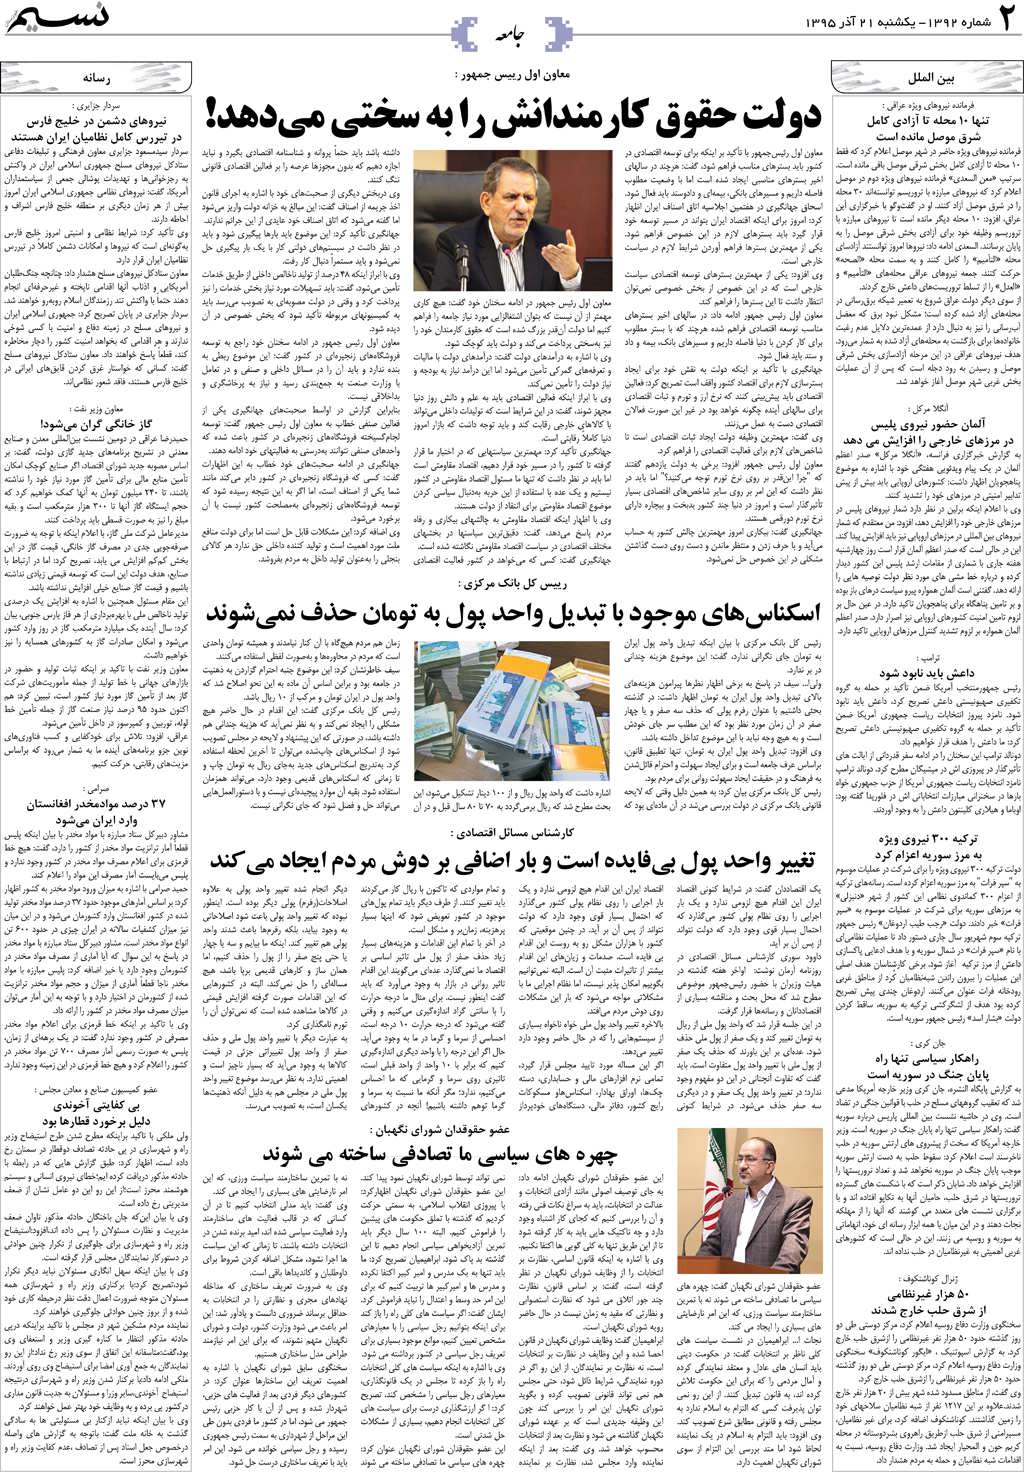 صفحه جامعه روزنامه نسیم شماره 1392